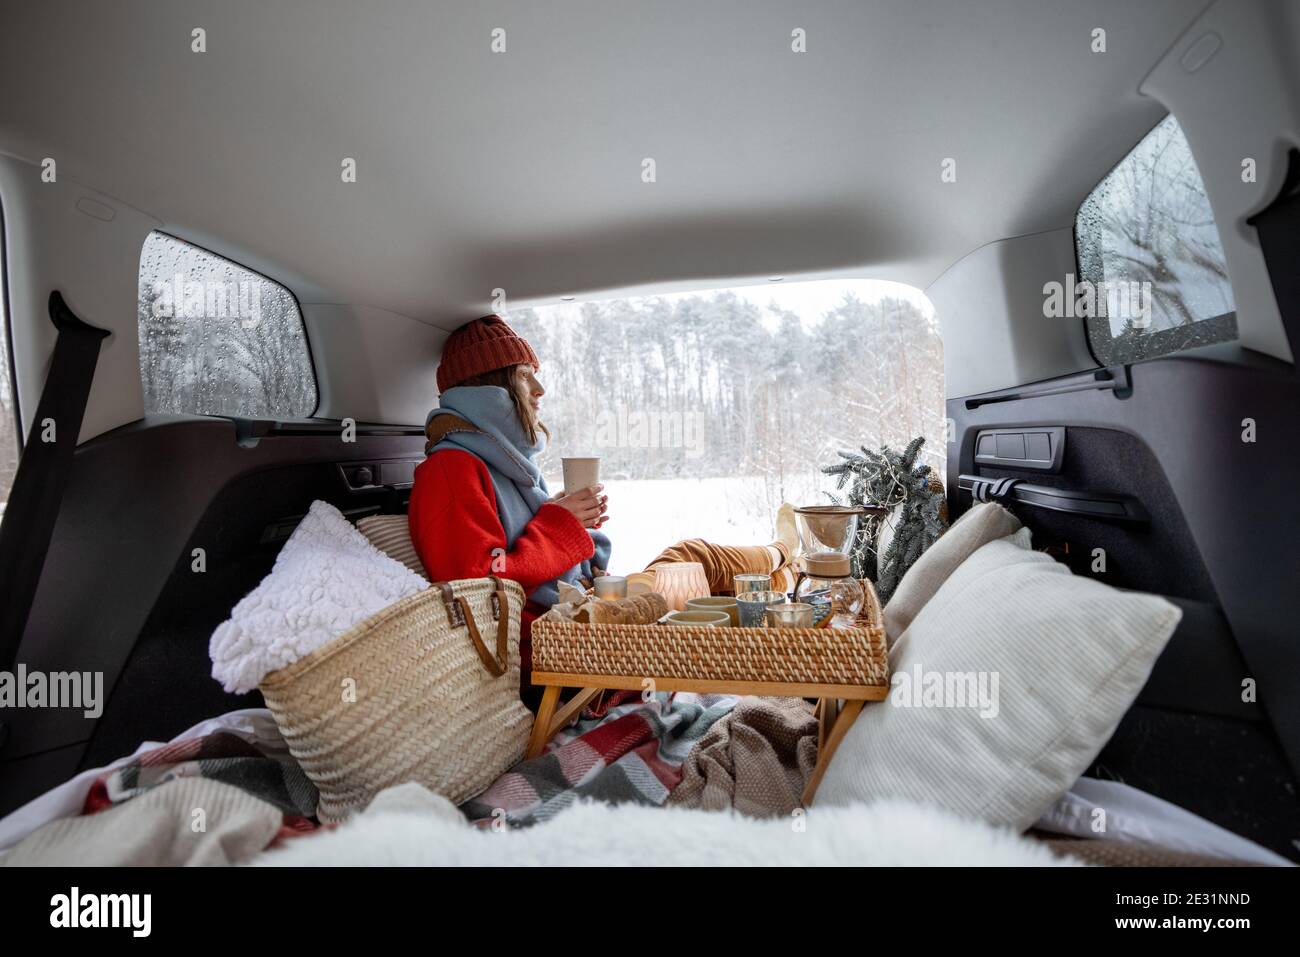 Im kofferraum des autos gibt es einen schneebedeckten weihnachtsbaum und  mandarinen auf einer blauen decke, das auto steht im winterwald